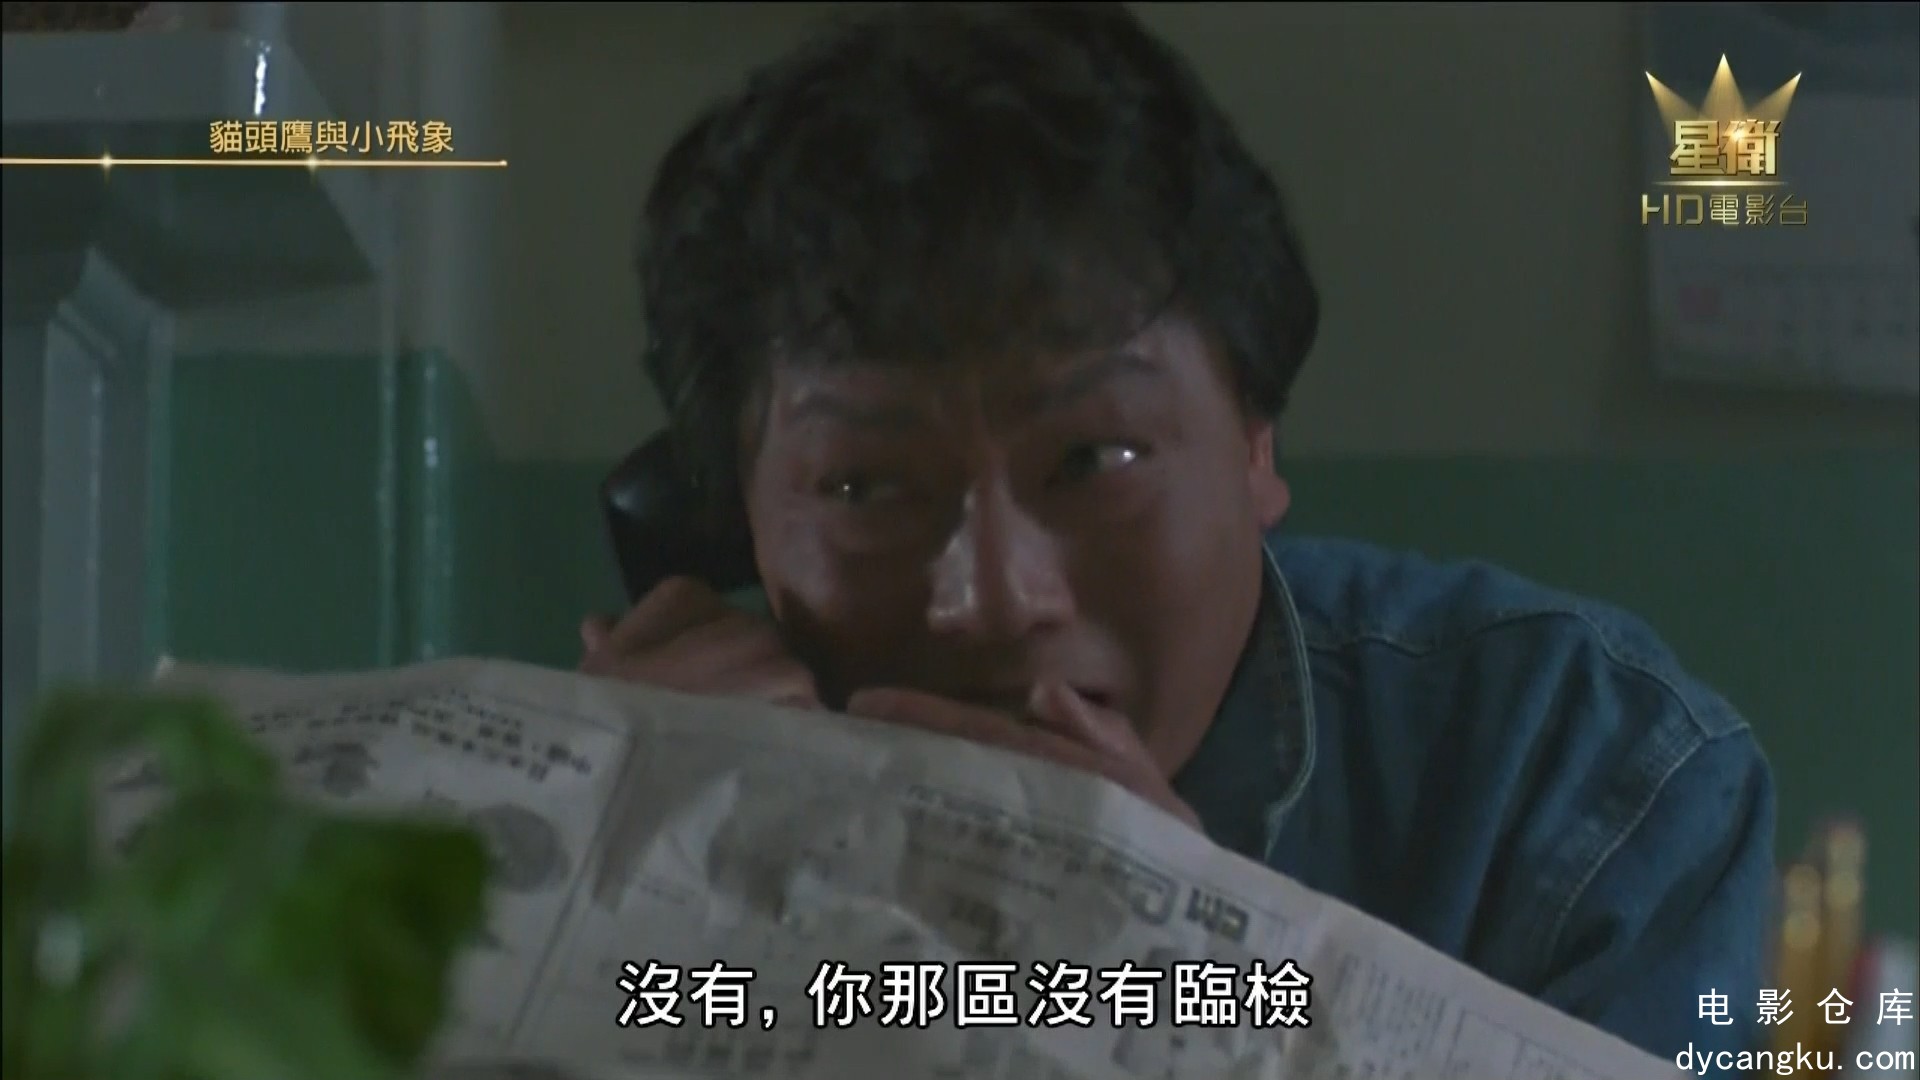 [电影仓库dycangku.com] 猫头鹰与小飞象 (1984) 1080p AAC.mkv_snapshot_00.11.13.925.jpg